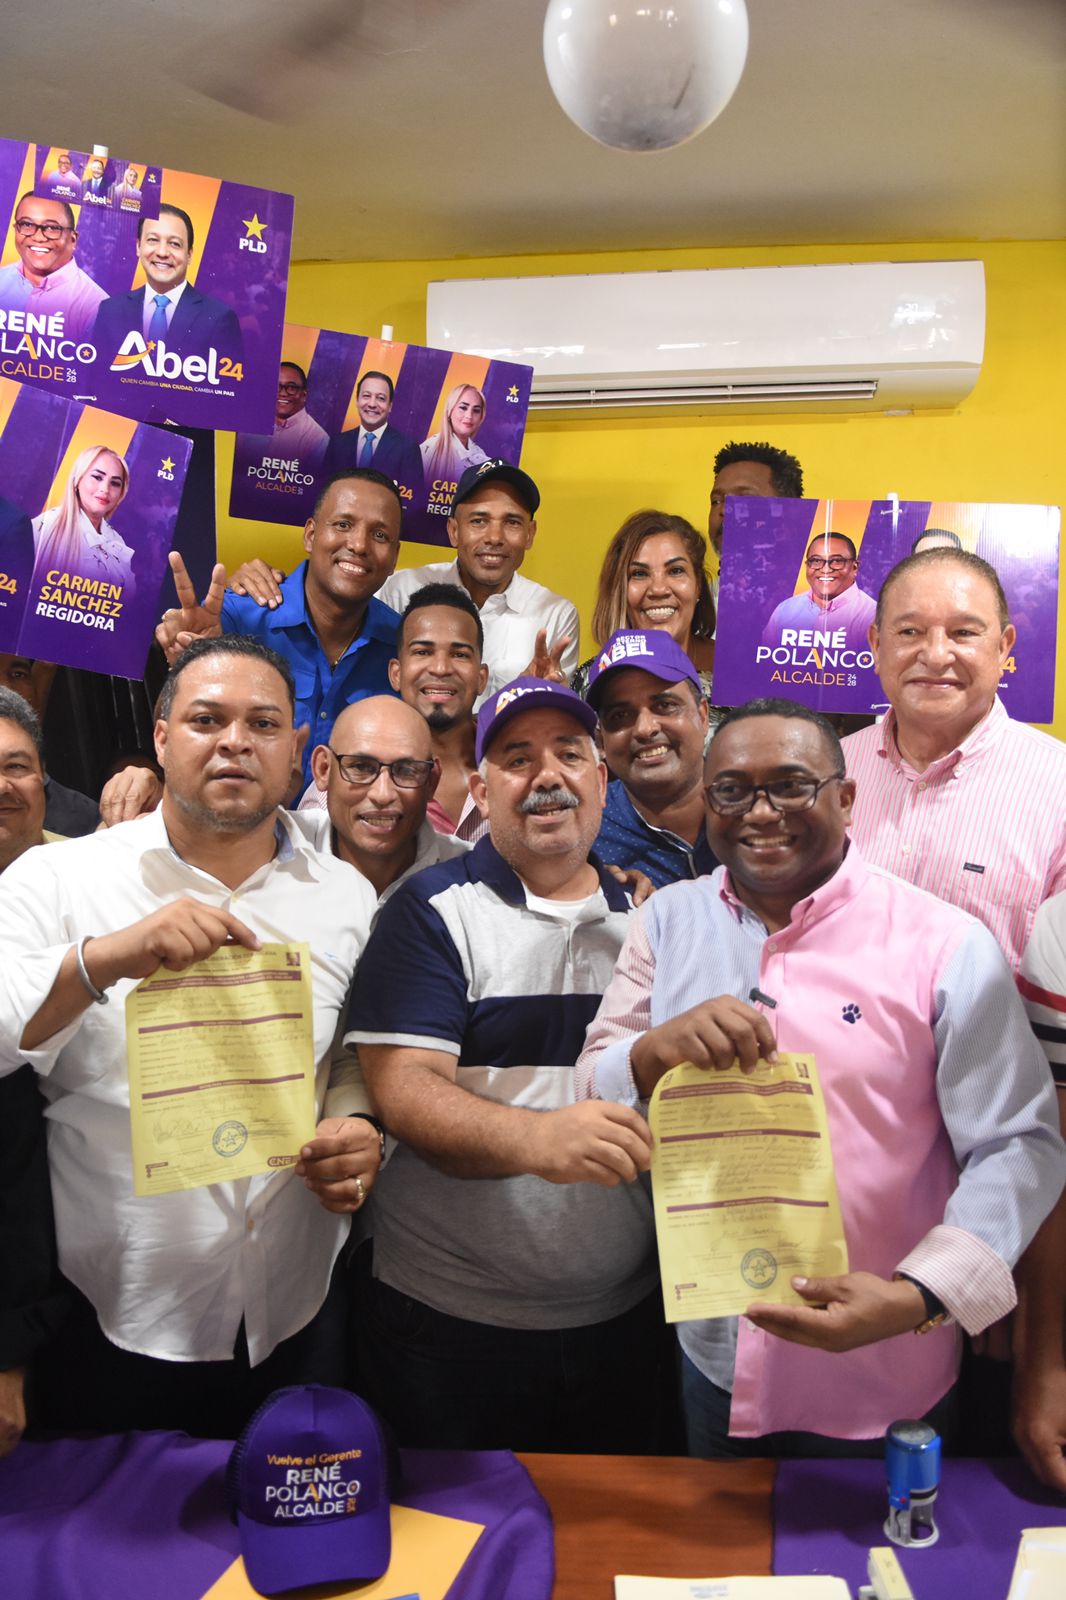 René Polanco oficializa sus aspiraciones para liderar la Alcaldía de Santo Domingo Norte